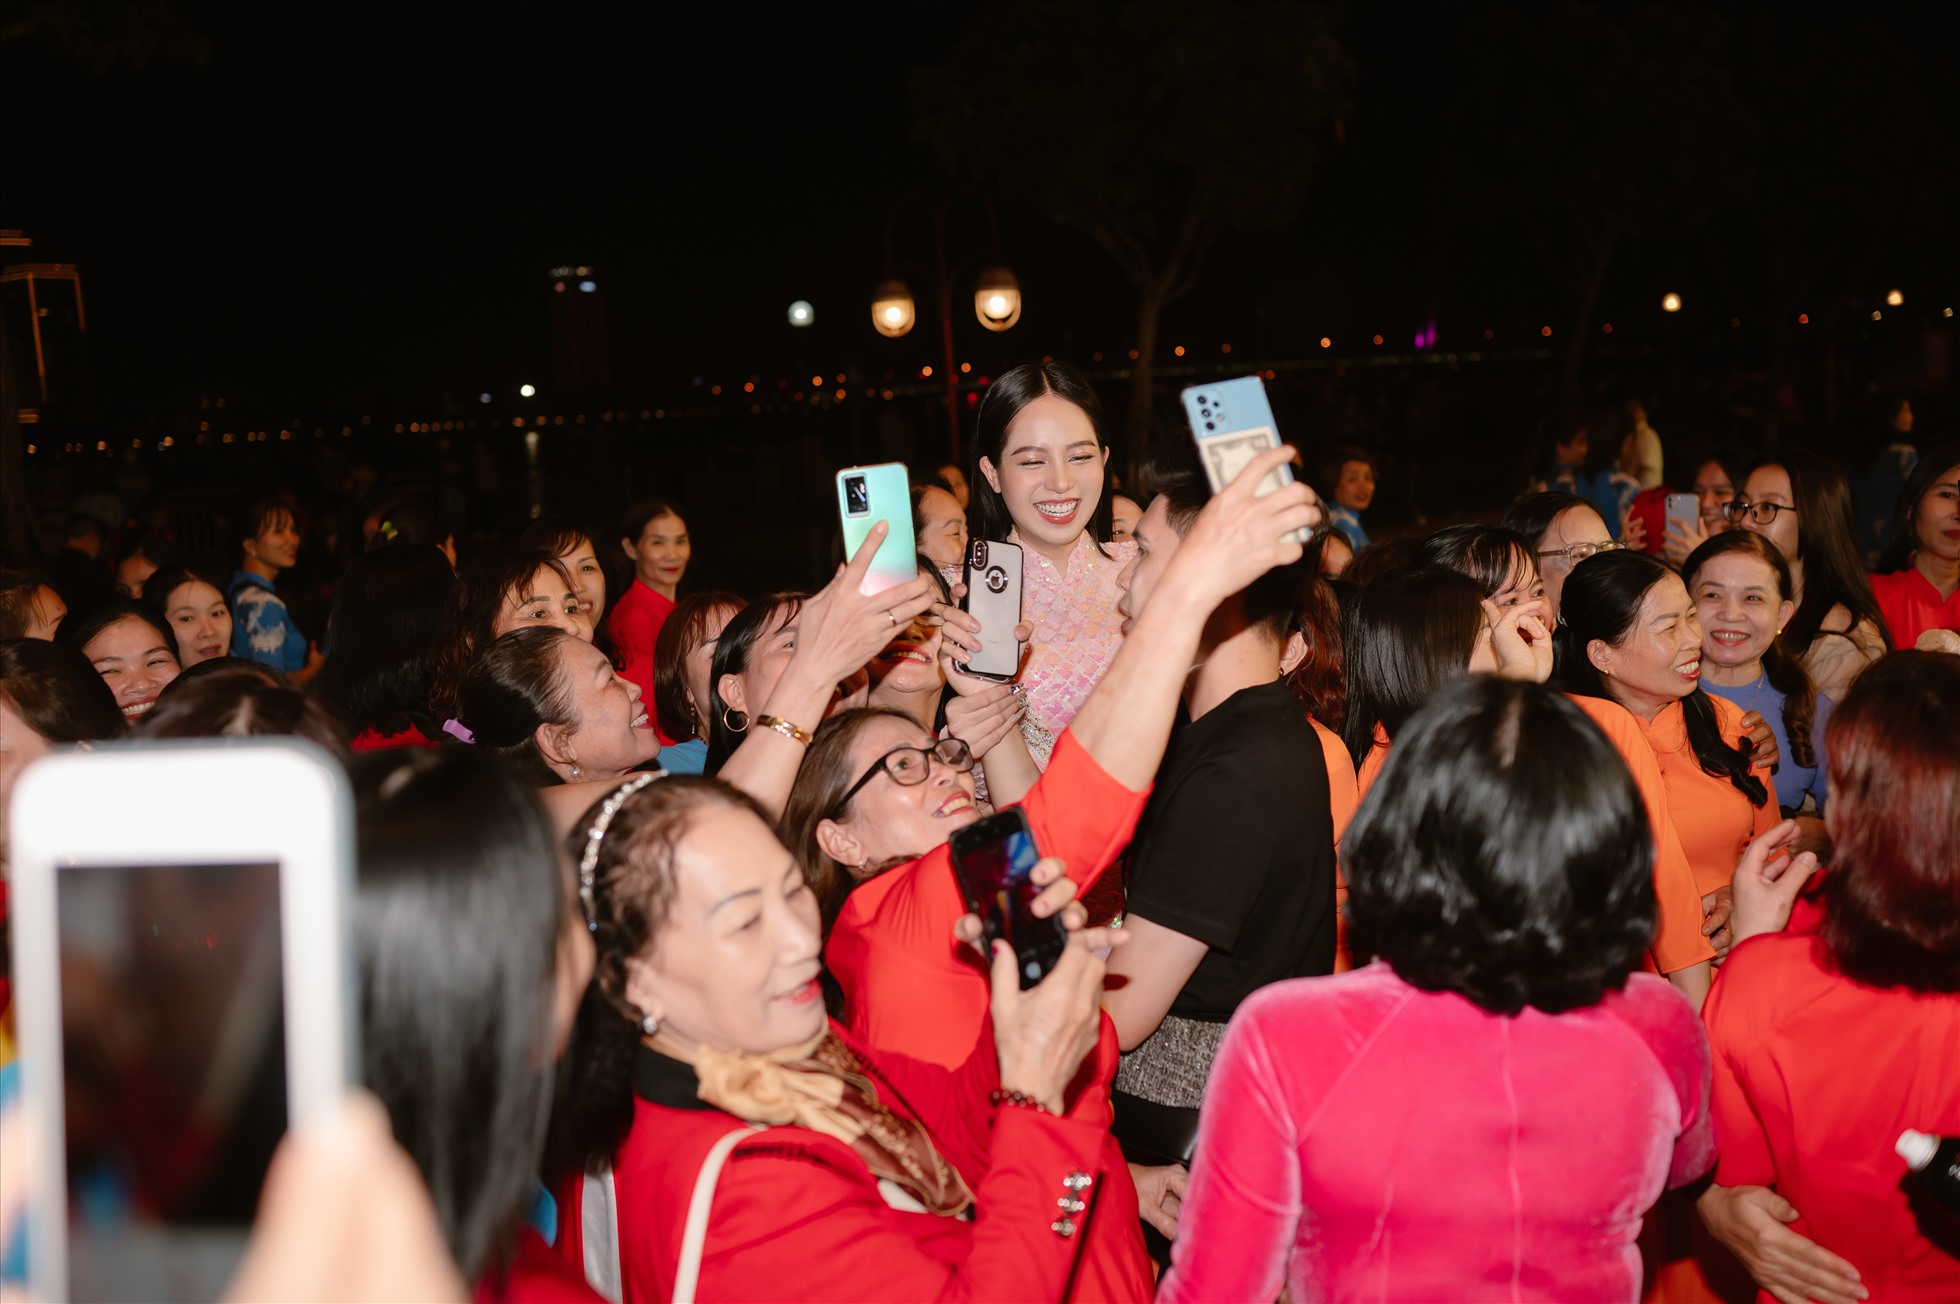 Cuối chương trình, Hoa hậu Thanh Thủy được đông đảo các chị em phụ nữ và người dân vây quanh. Nàng hậu sinh năm 2002 thân thiện chụp hình và ký tặng mọi người.